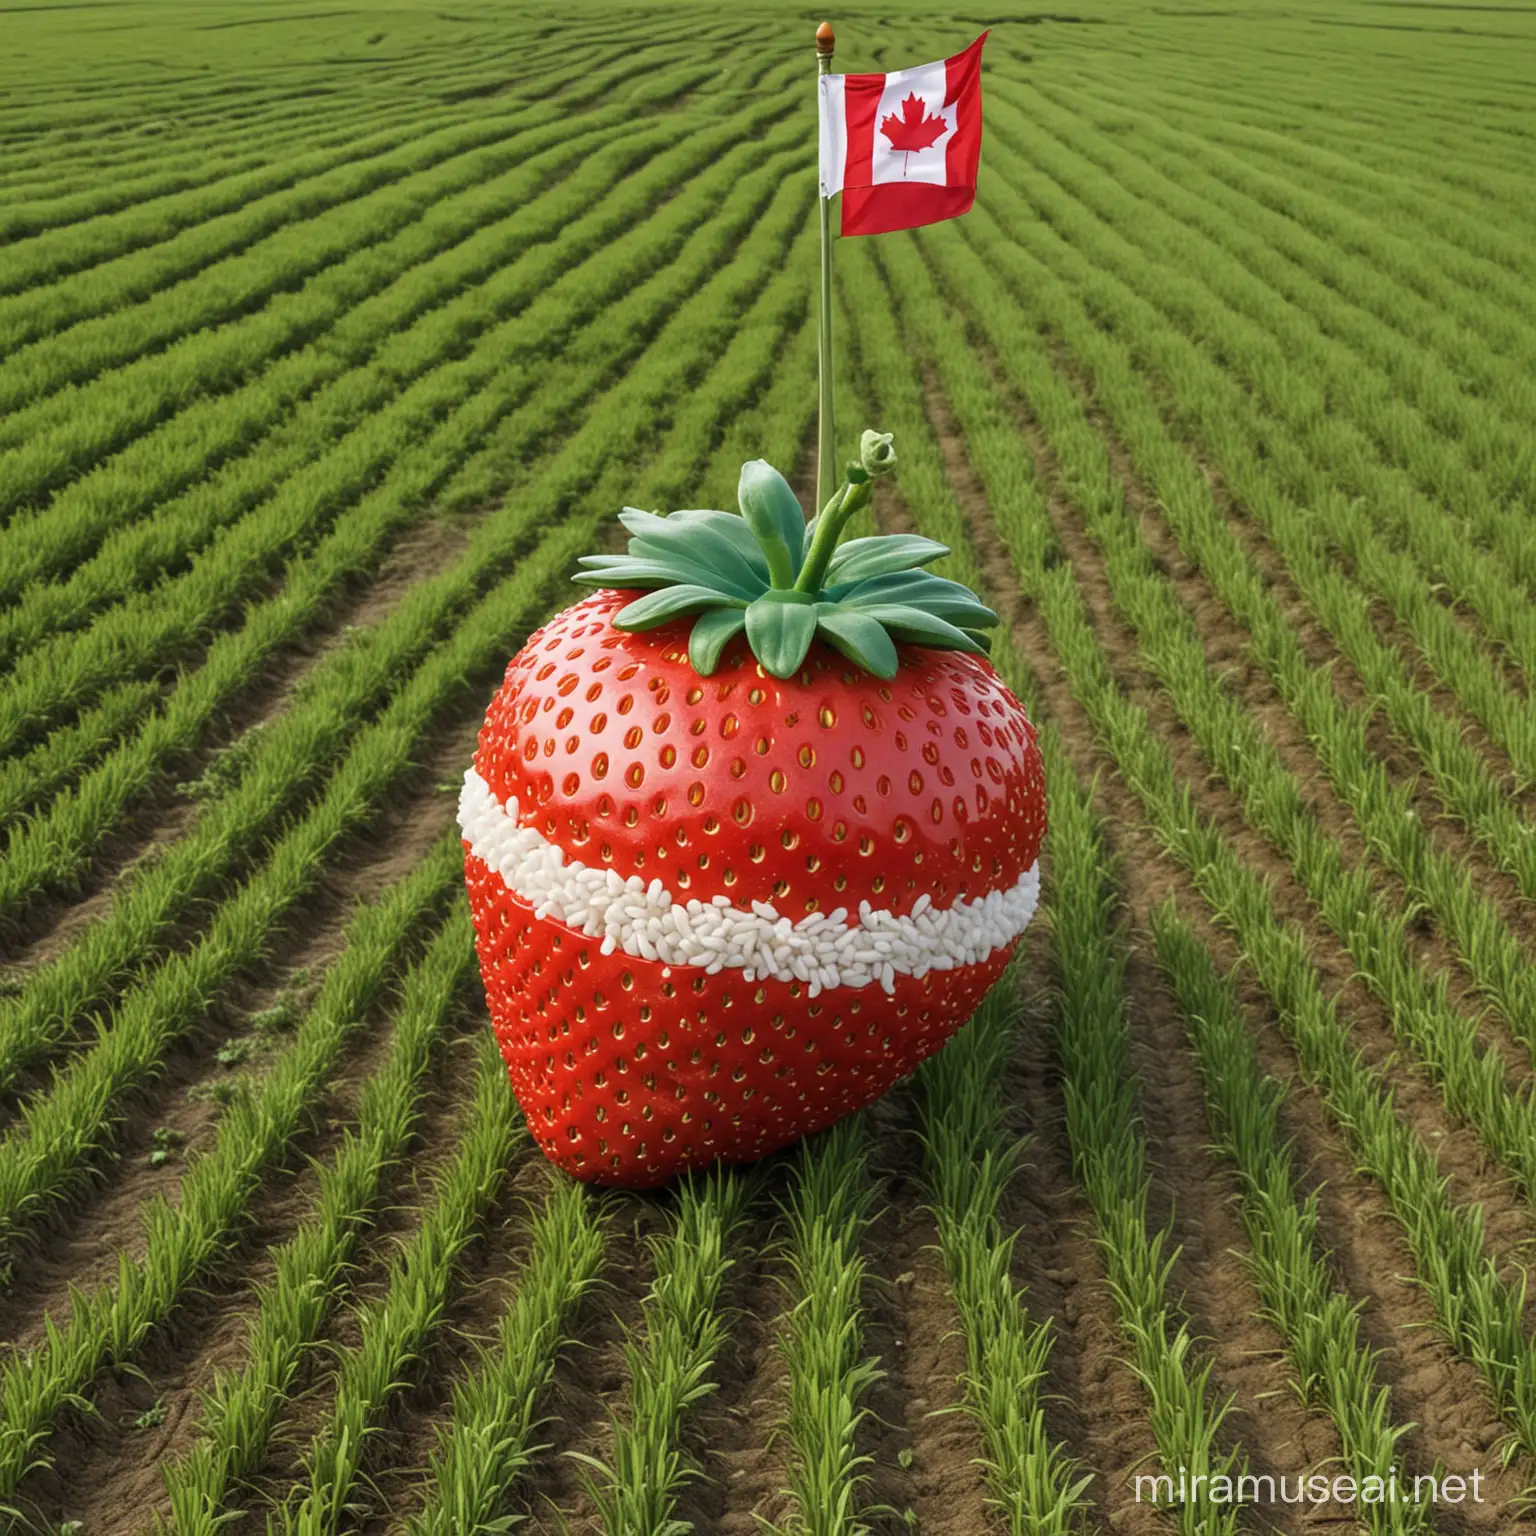 Buatkan gambar, buah stawbery raksasa,dengan tema bendera kanada, latar belakang sawah 